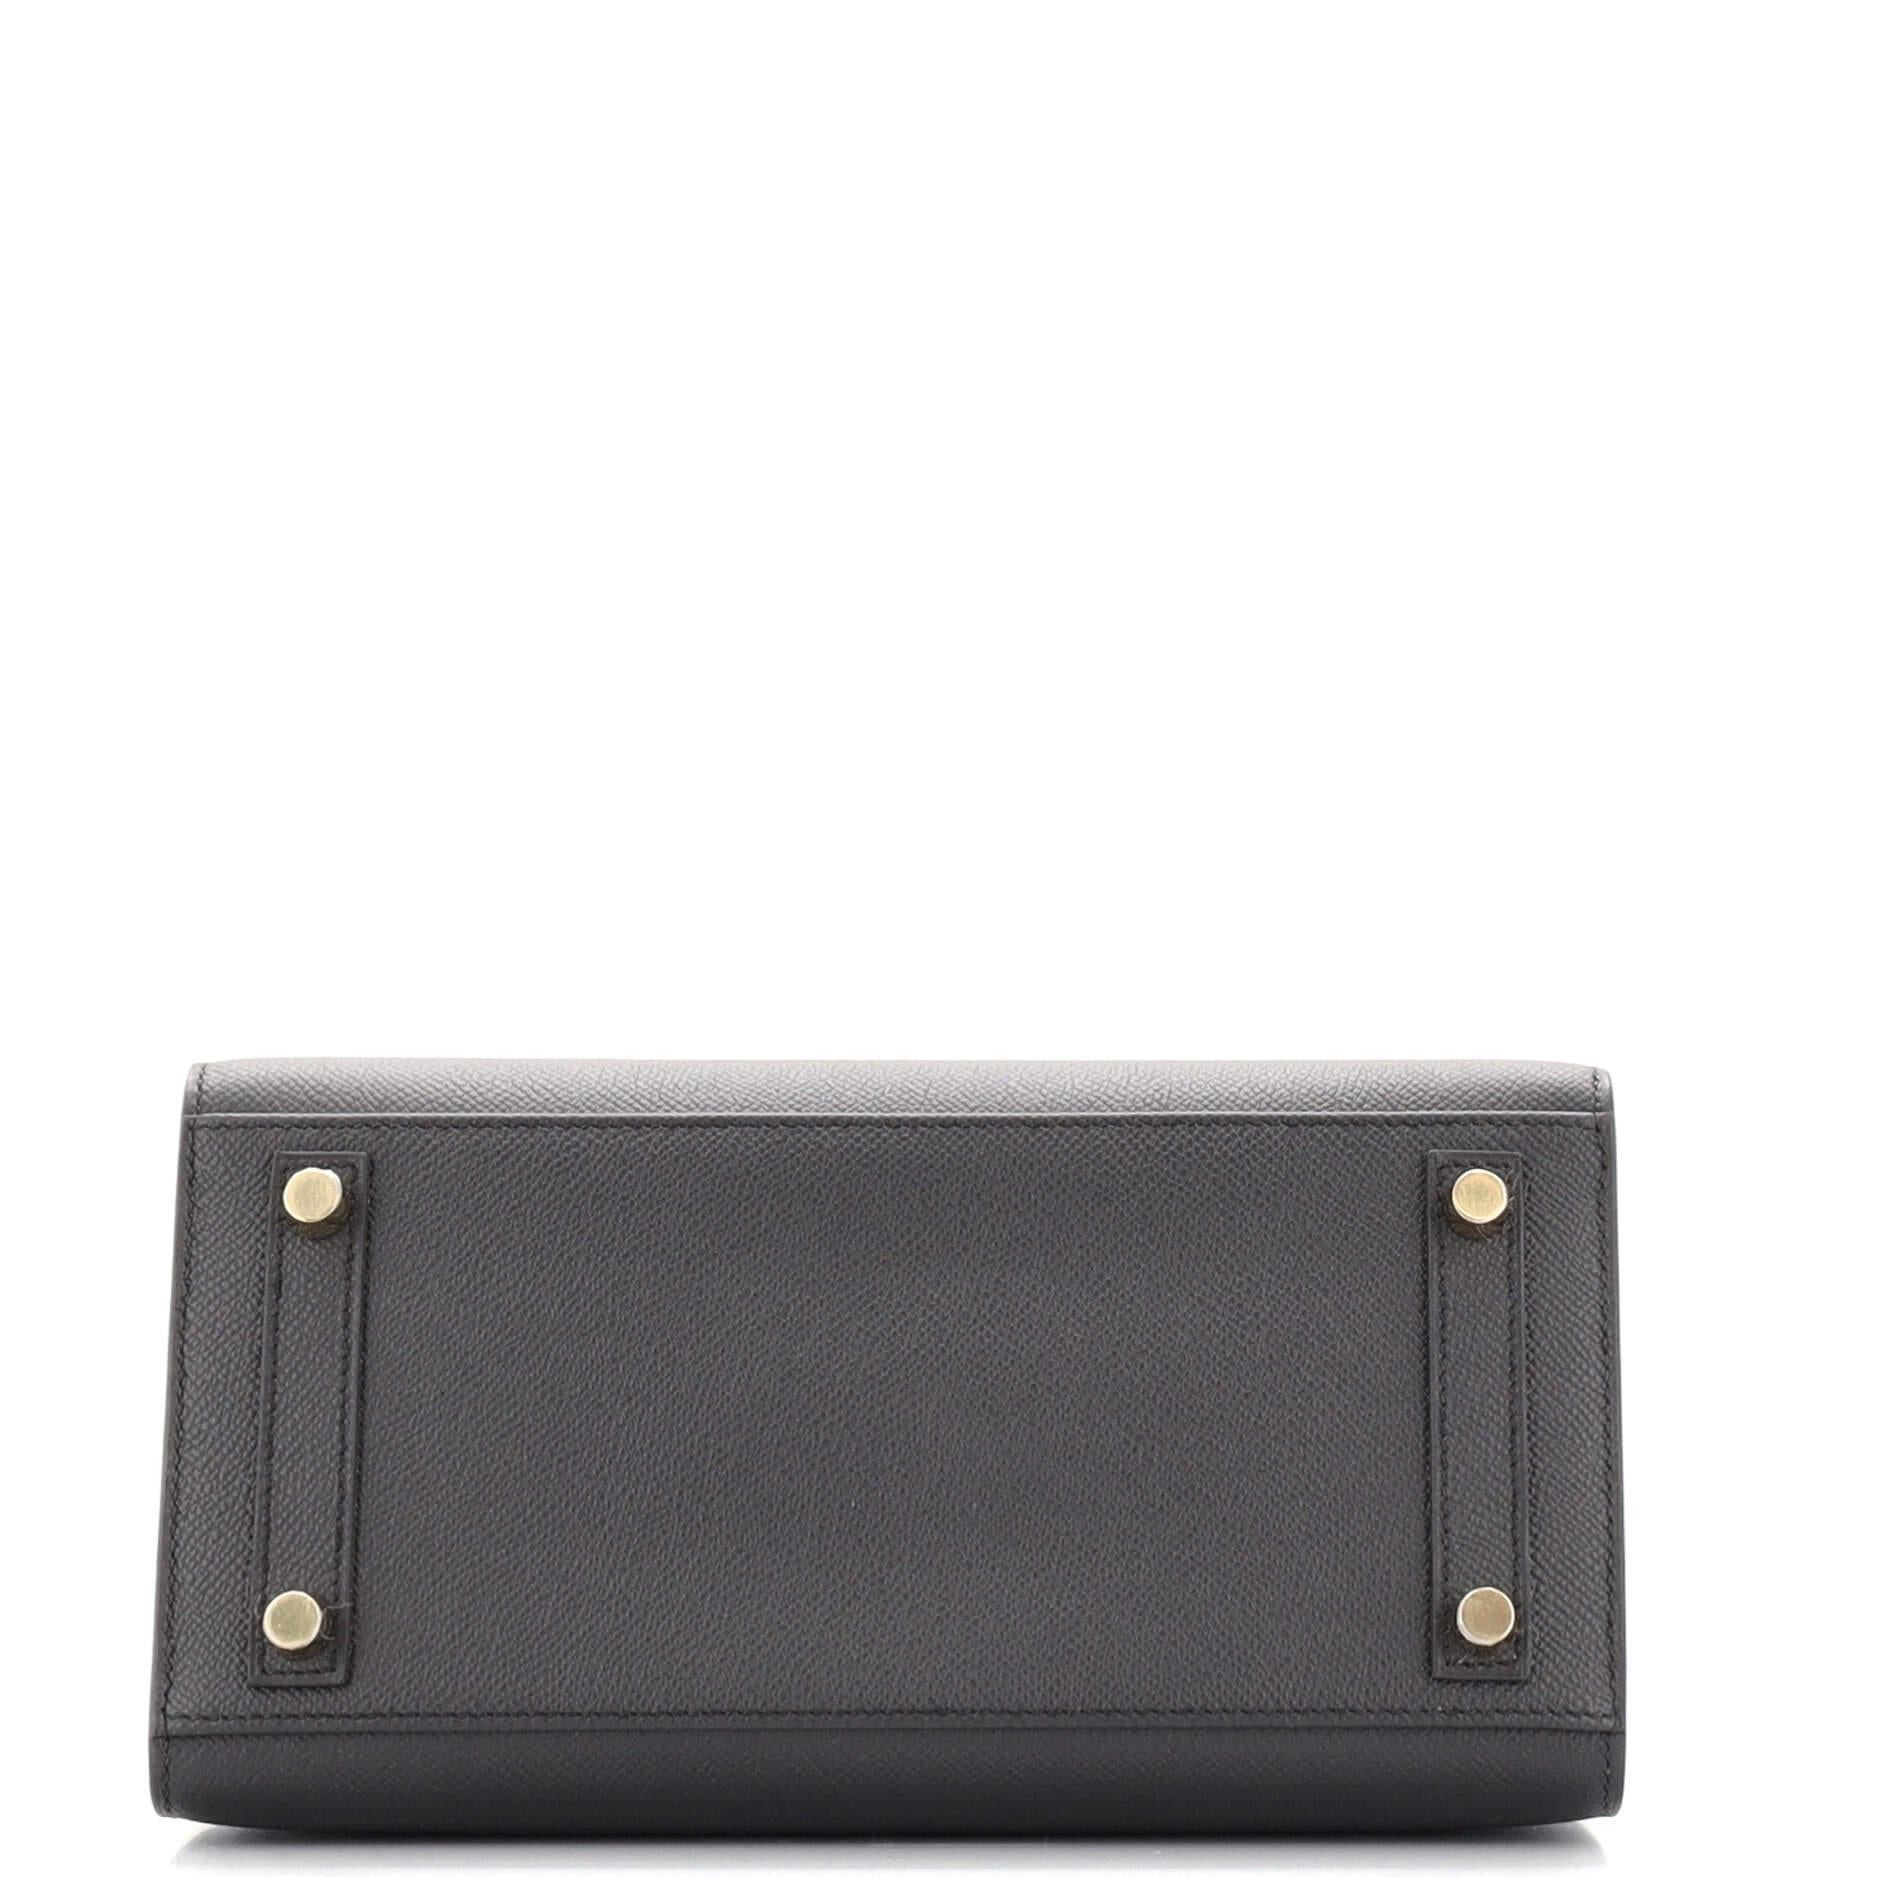 Women's or Men's Hermes Birkin Sellier Bag Noir Epsom with Gold Hardware 25